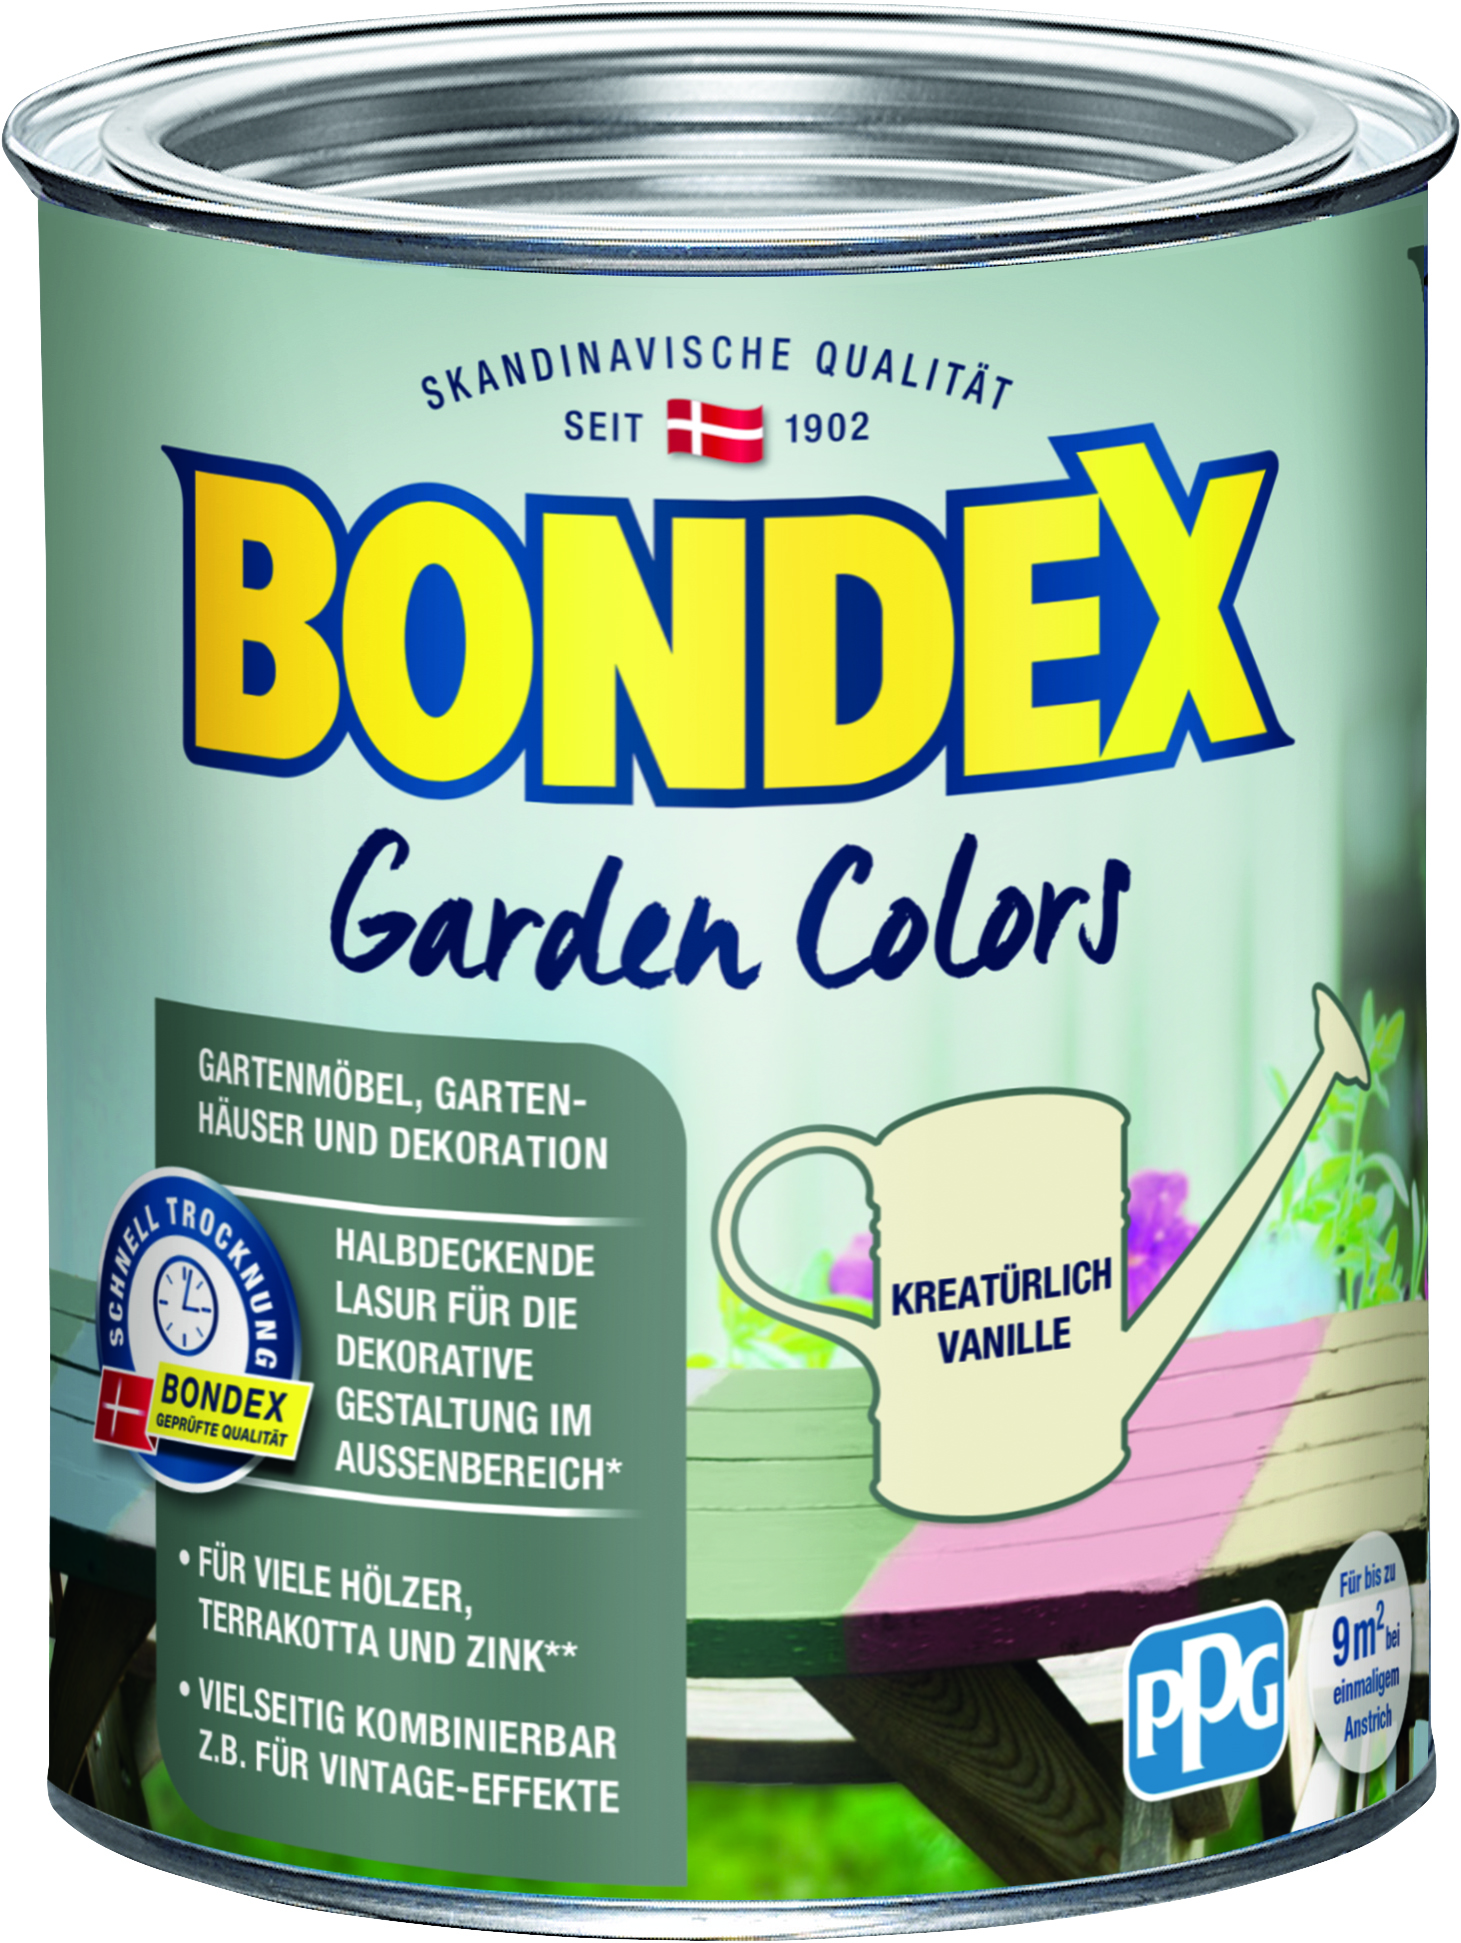 Bondex Garden Colors Kreatürlich Vanille, 750ml